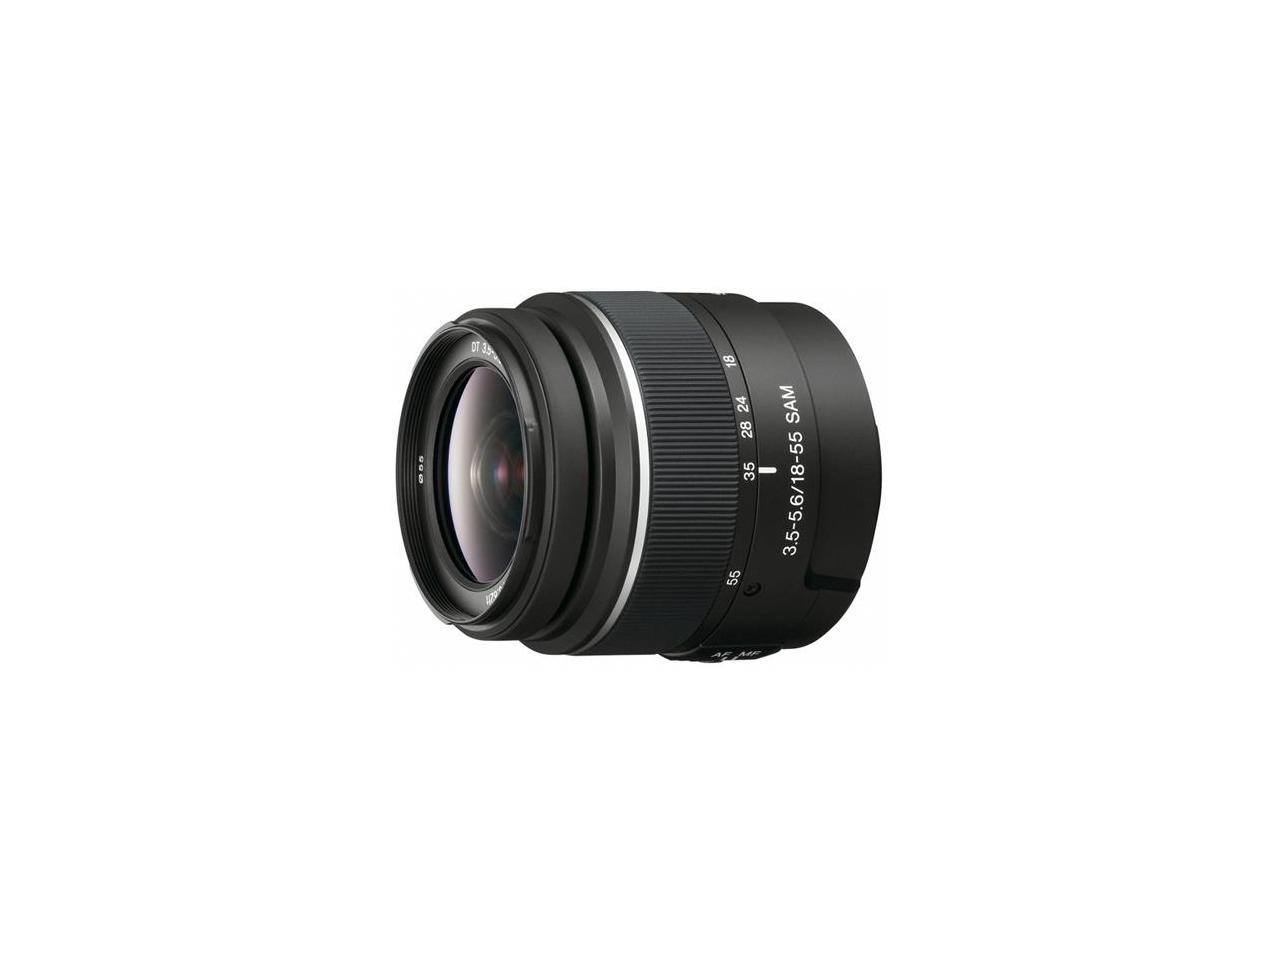 Sony DT 18-55mm f/3.5-5.6 Standard Zoom Lens for (alpha) DSLR Camera #SAL1855